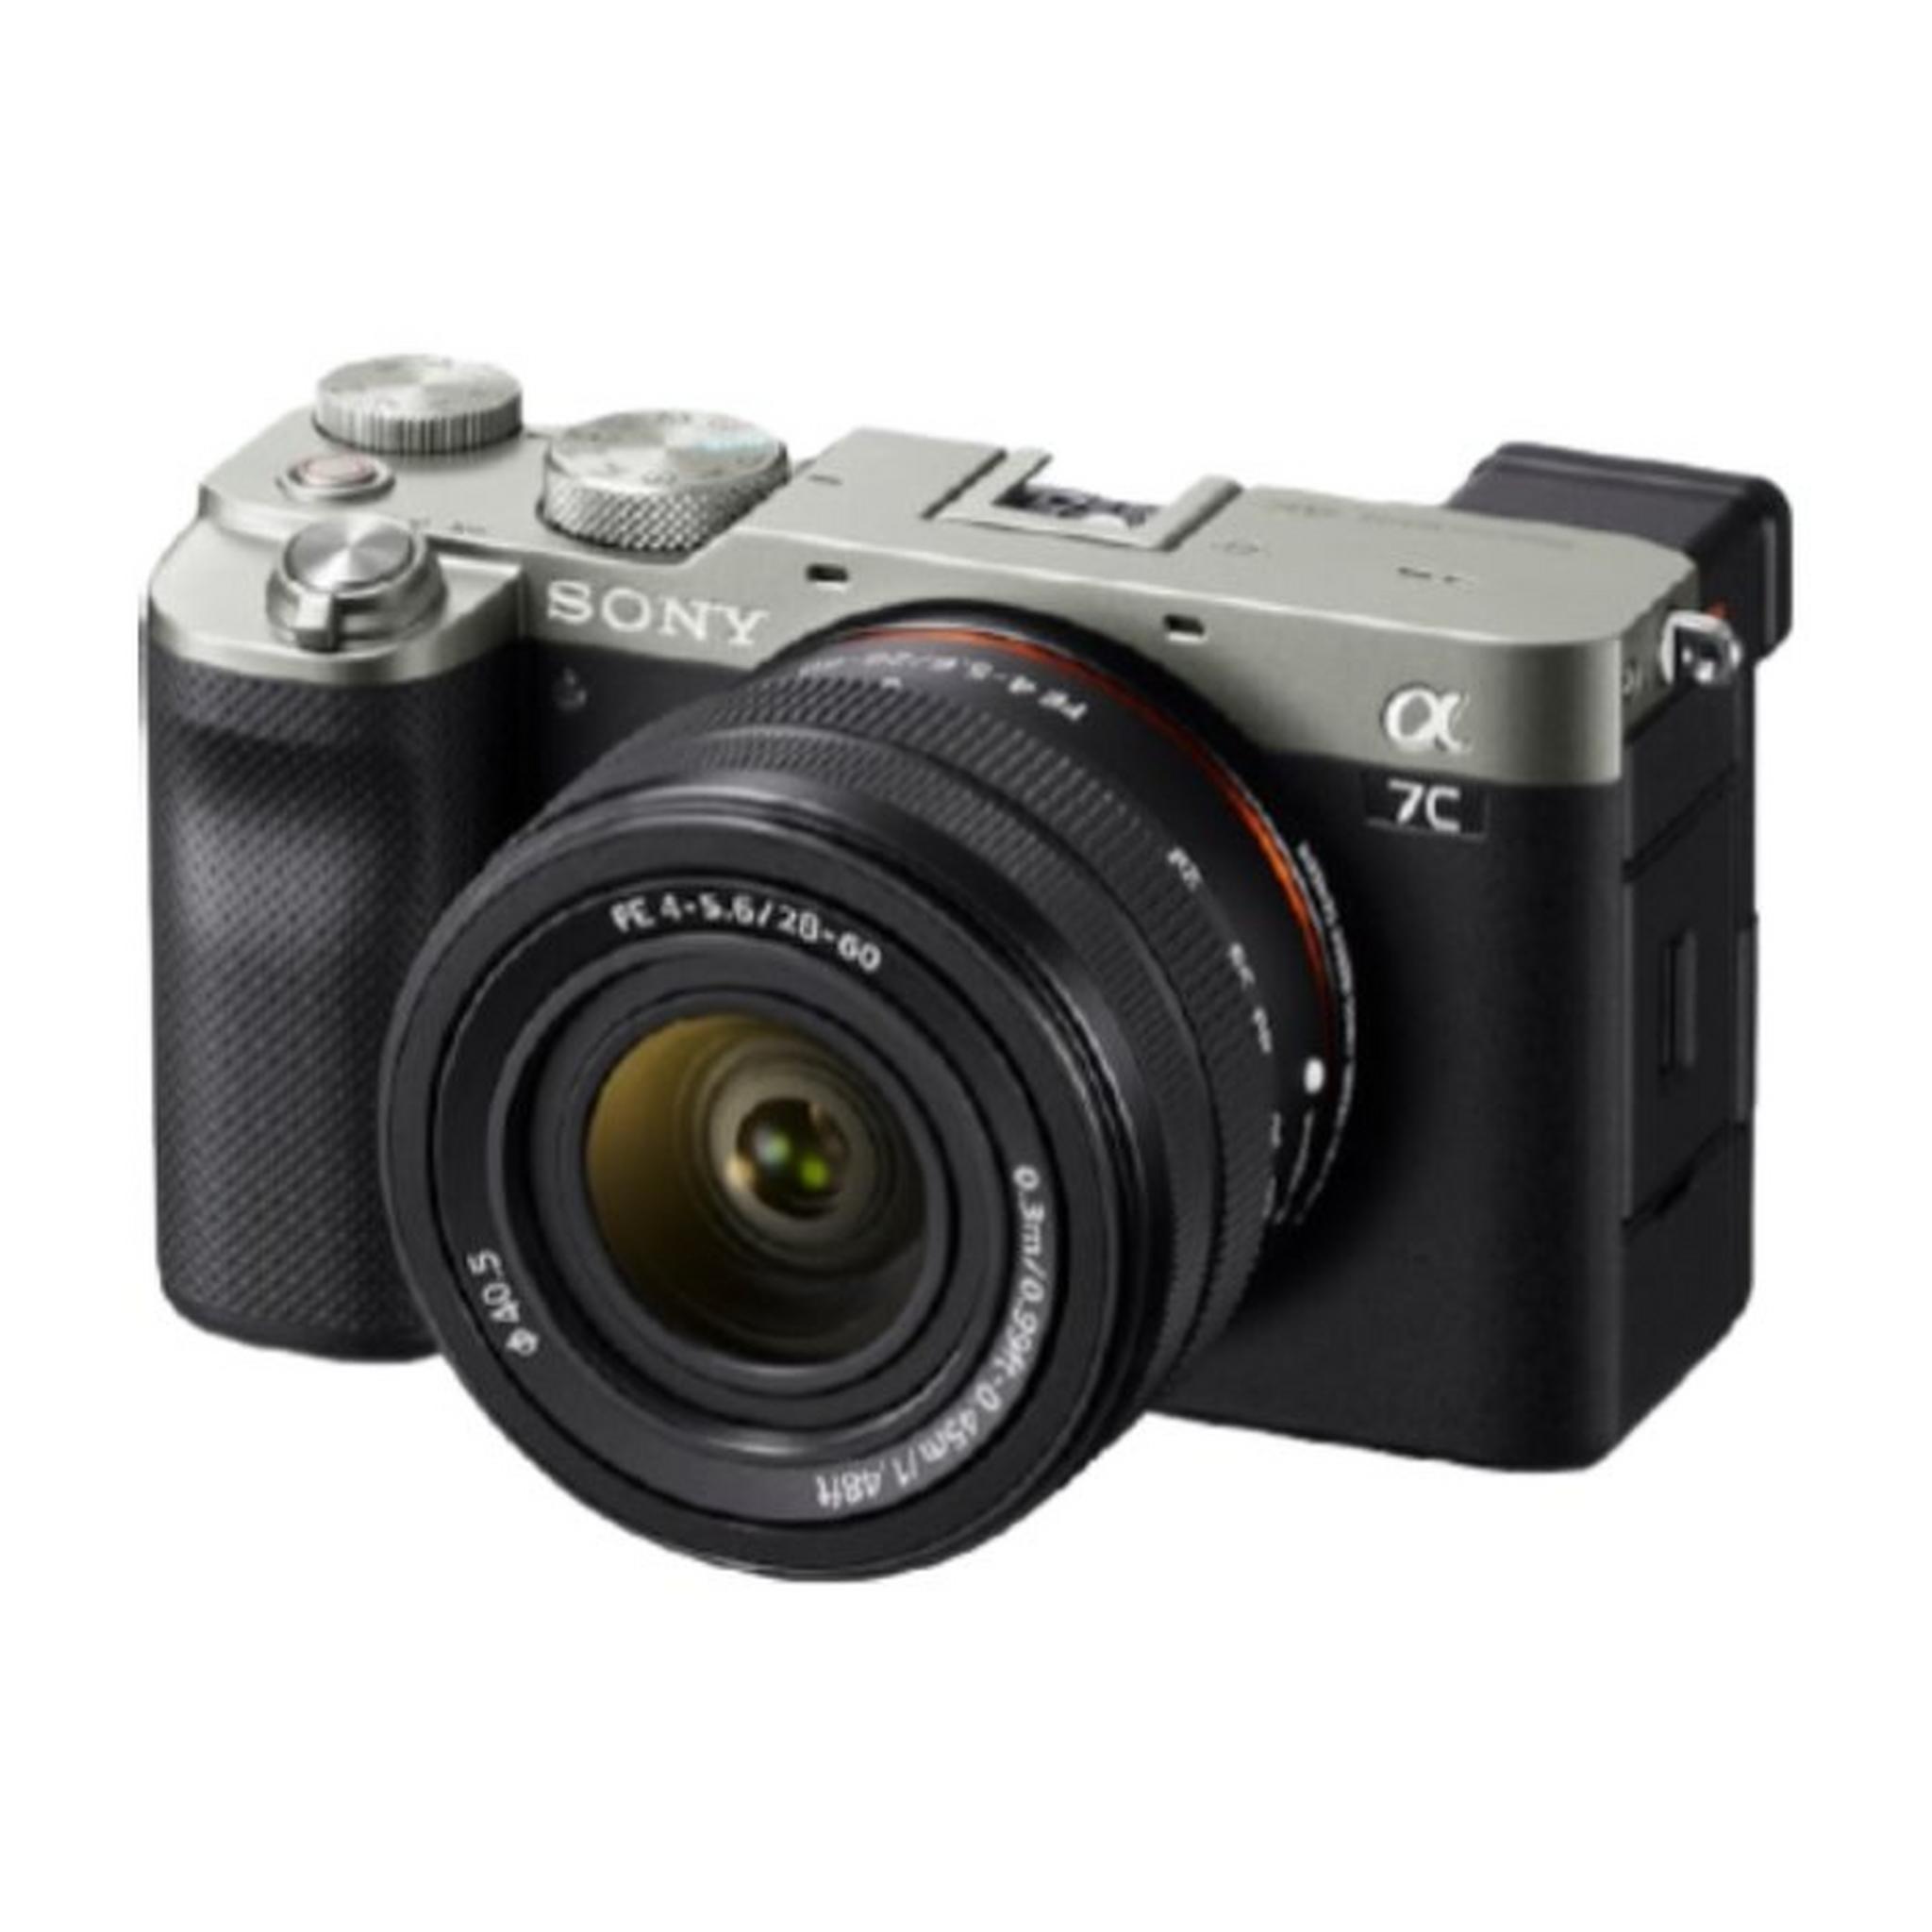 كاميرا ألفا 7C الصغيرة الحجم ذات الإطار الكامل بدون مرآة + عدسة FE مقاس 28-60 مم F4-5.6 - فضي